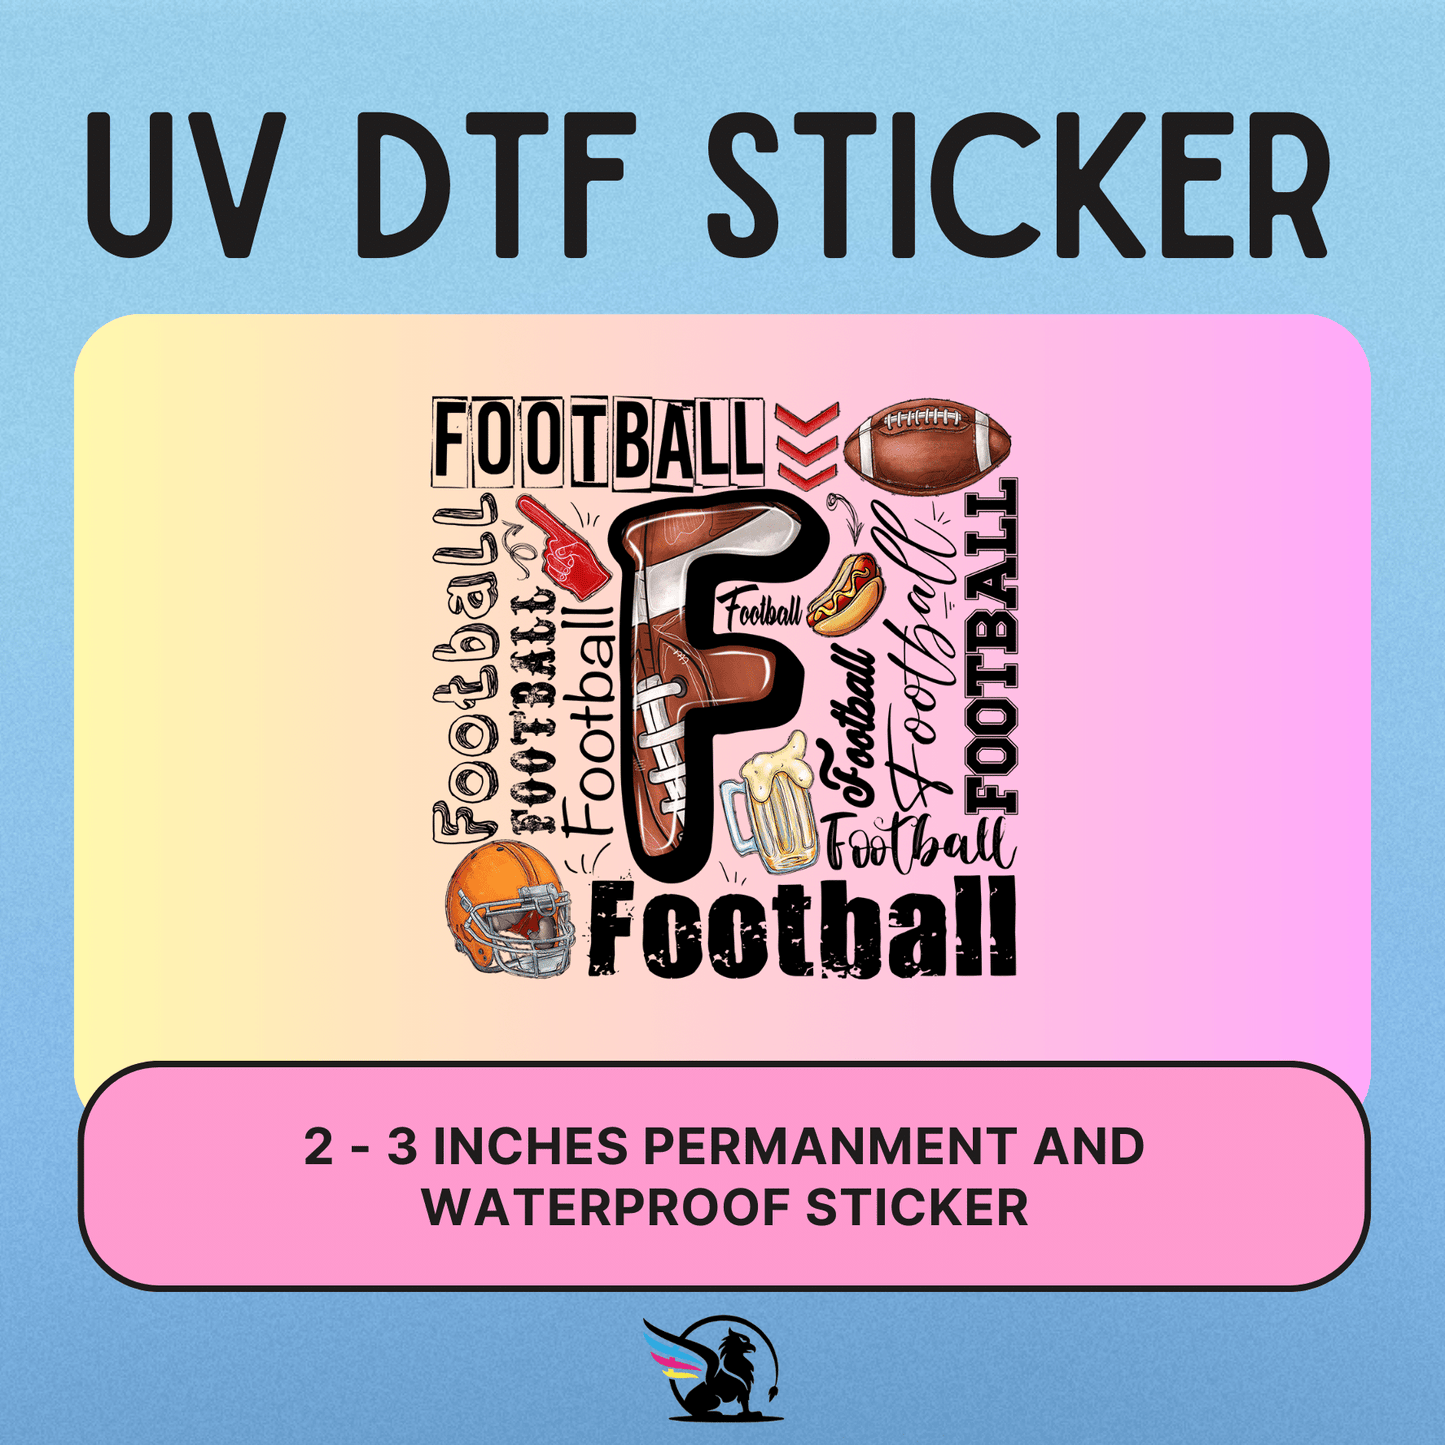 Football | UV DTF STICKER